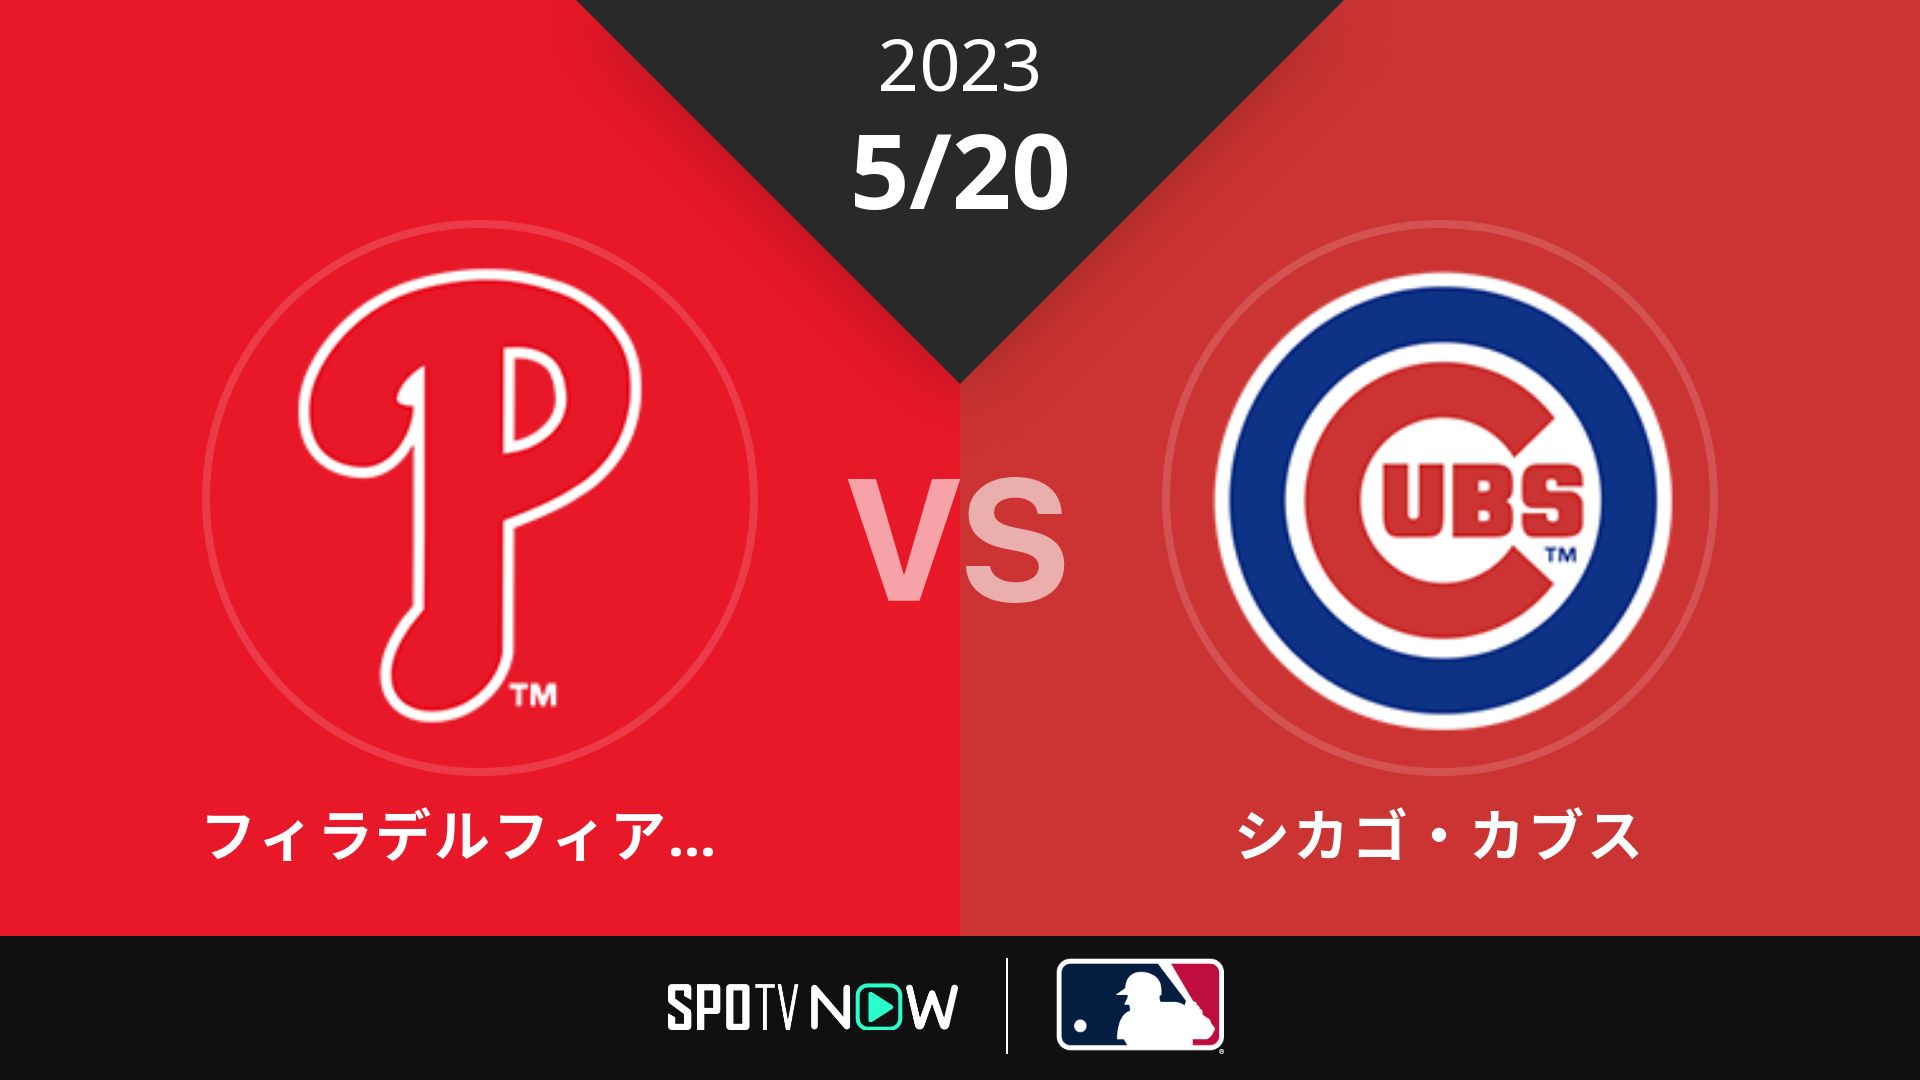 2023/5/20 フィリーズ vs カブス [MLB]